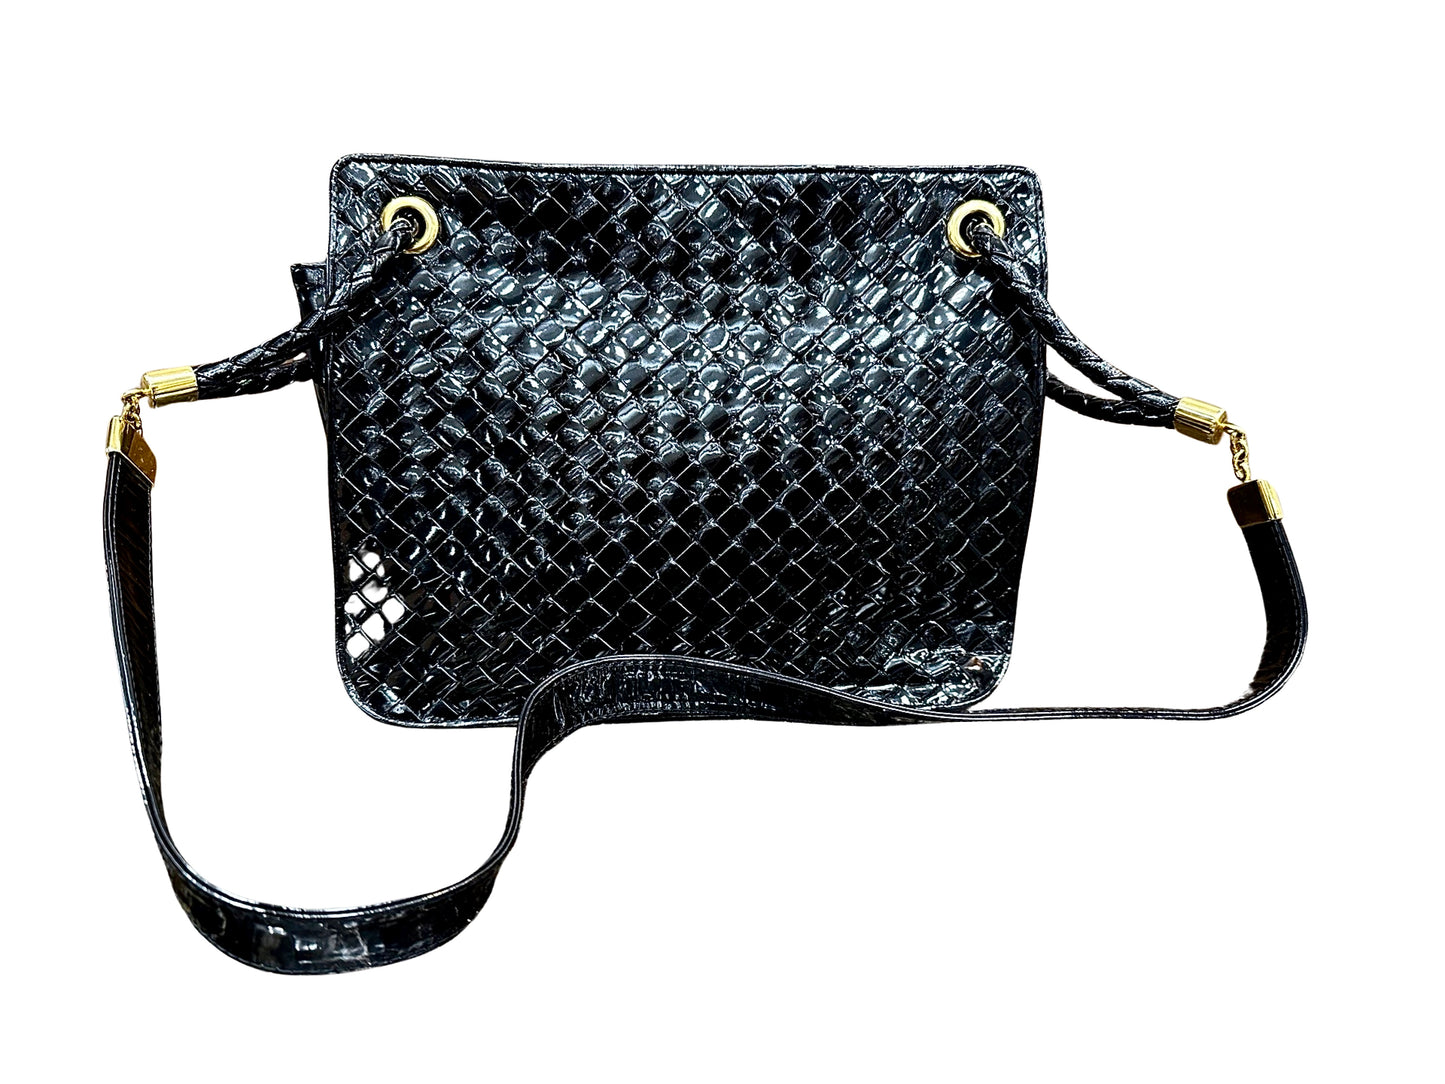 Black patent leather bag with misshaped shoulder strap